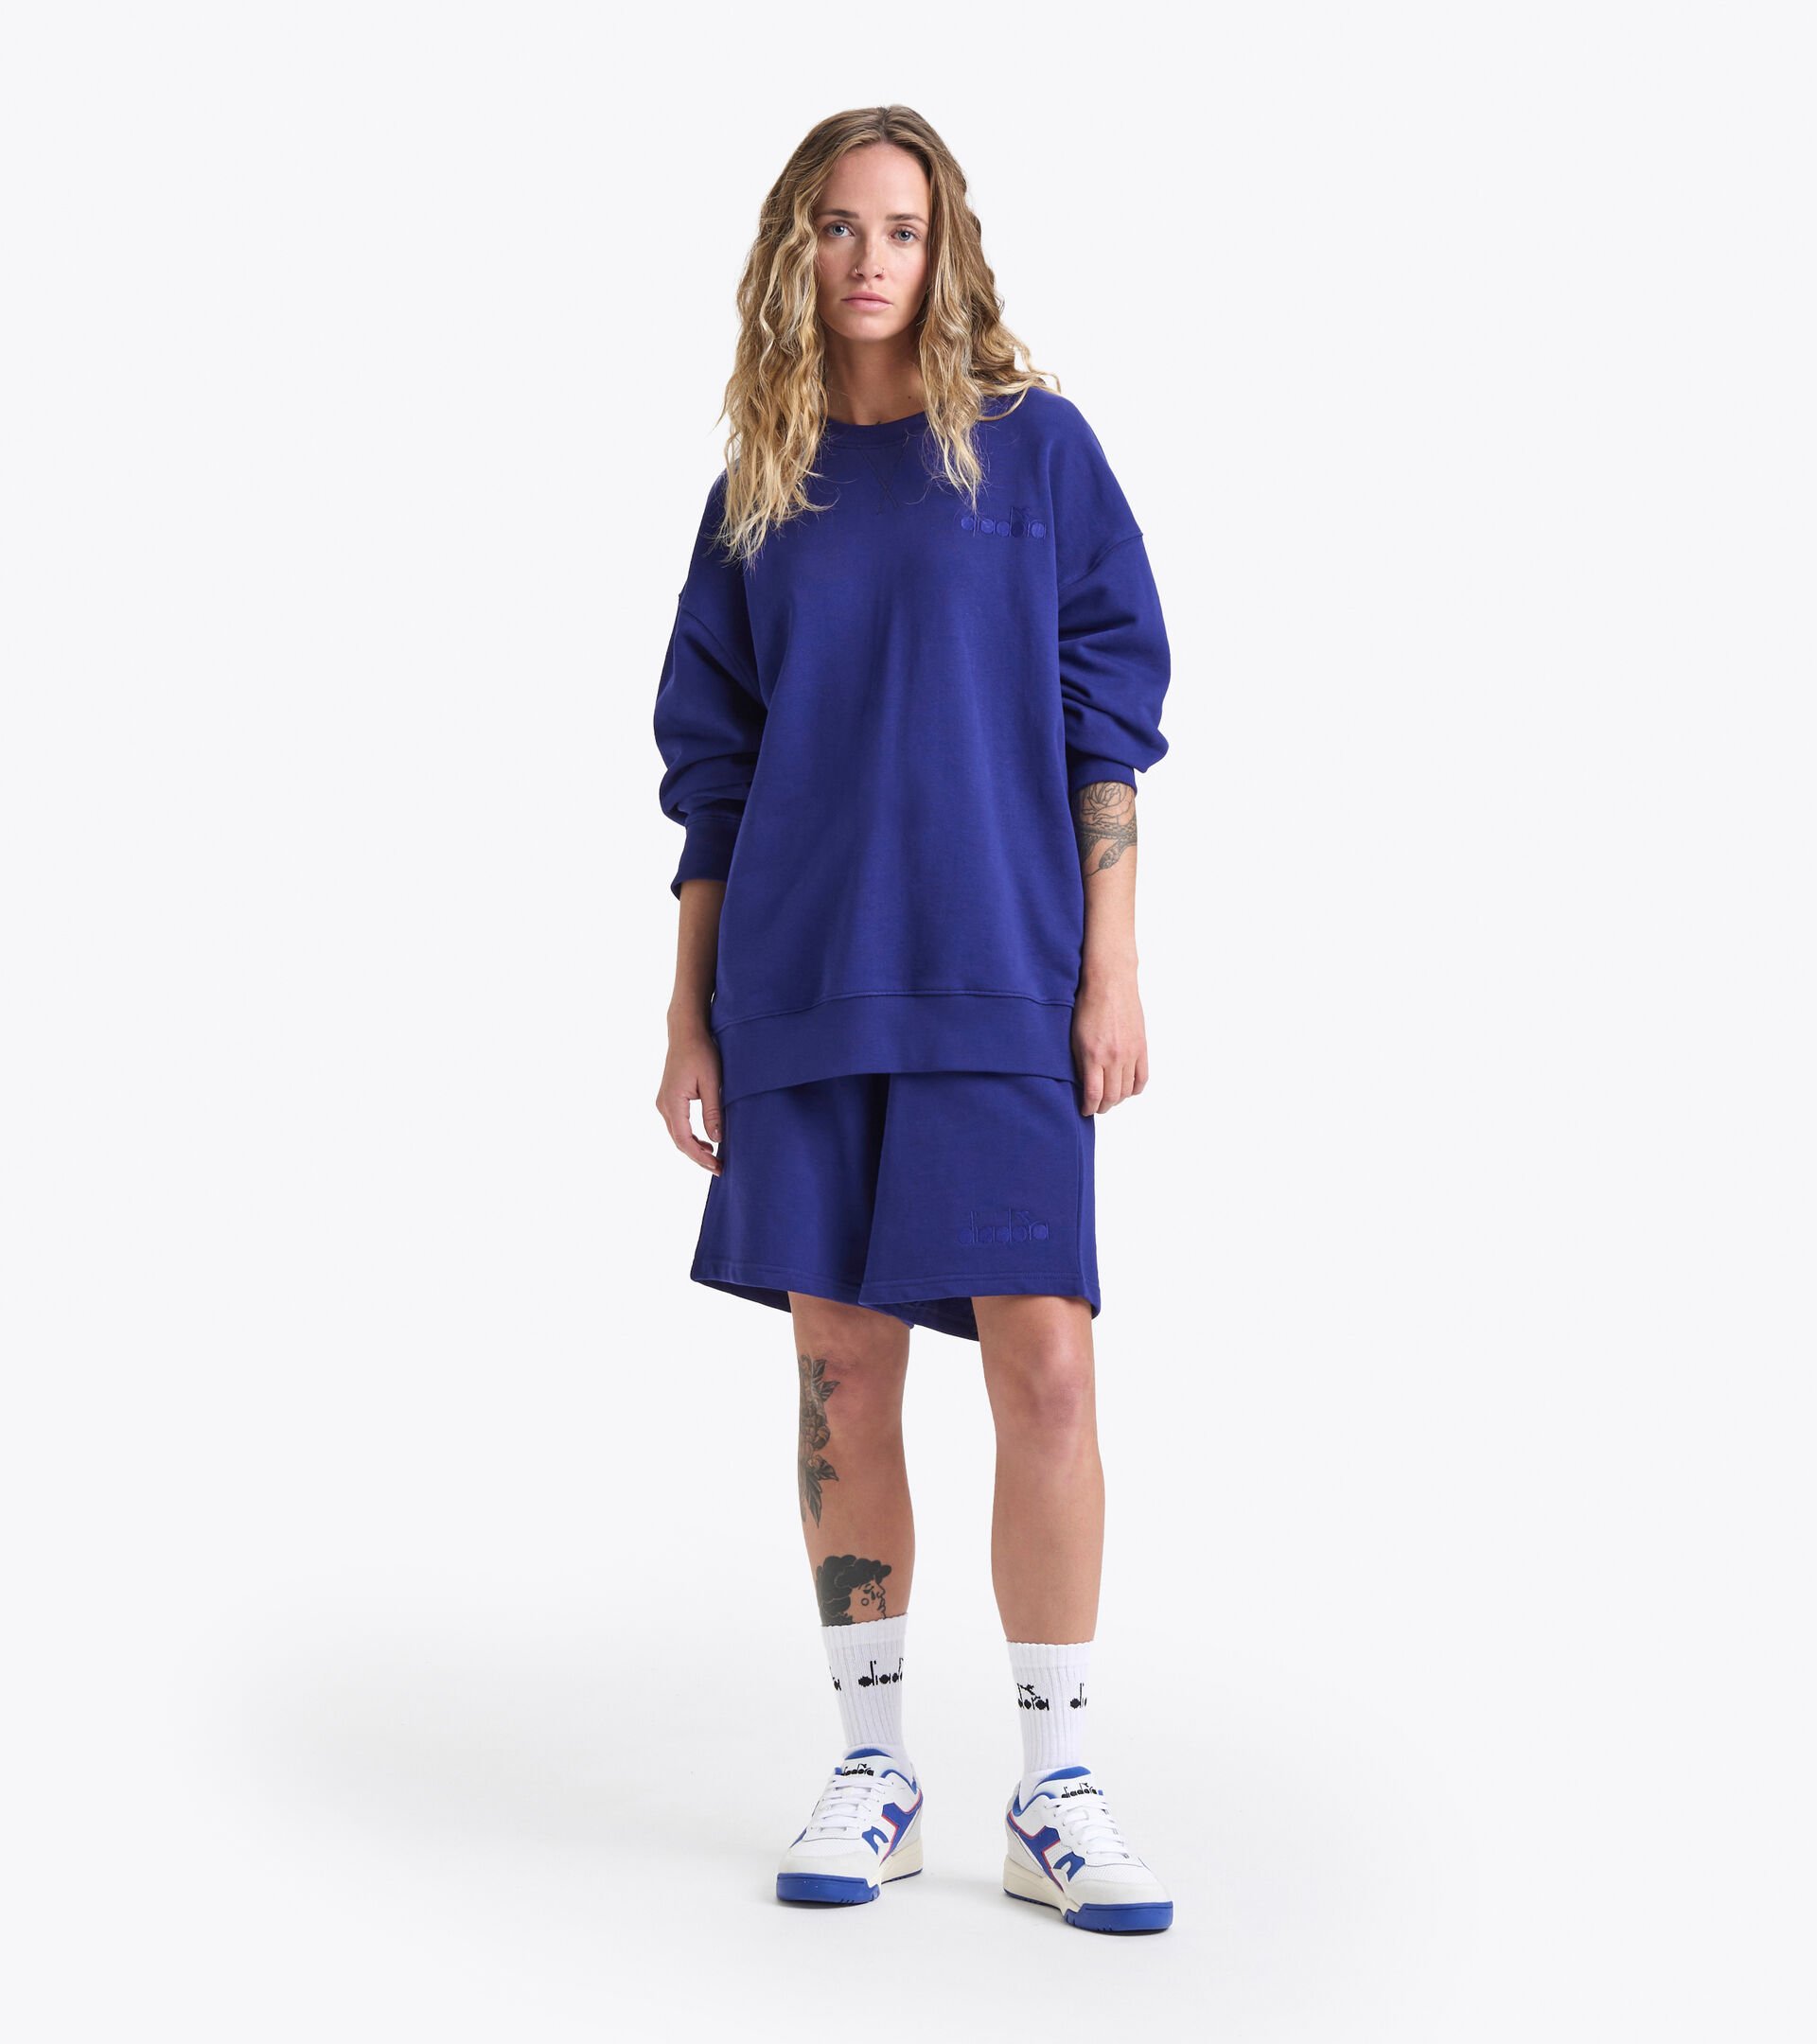 Cotton sweatshirt - Gender neutral SWEATSHIRT CREW SPW LOGO BLUE PRINT - Diadora